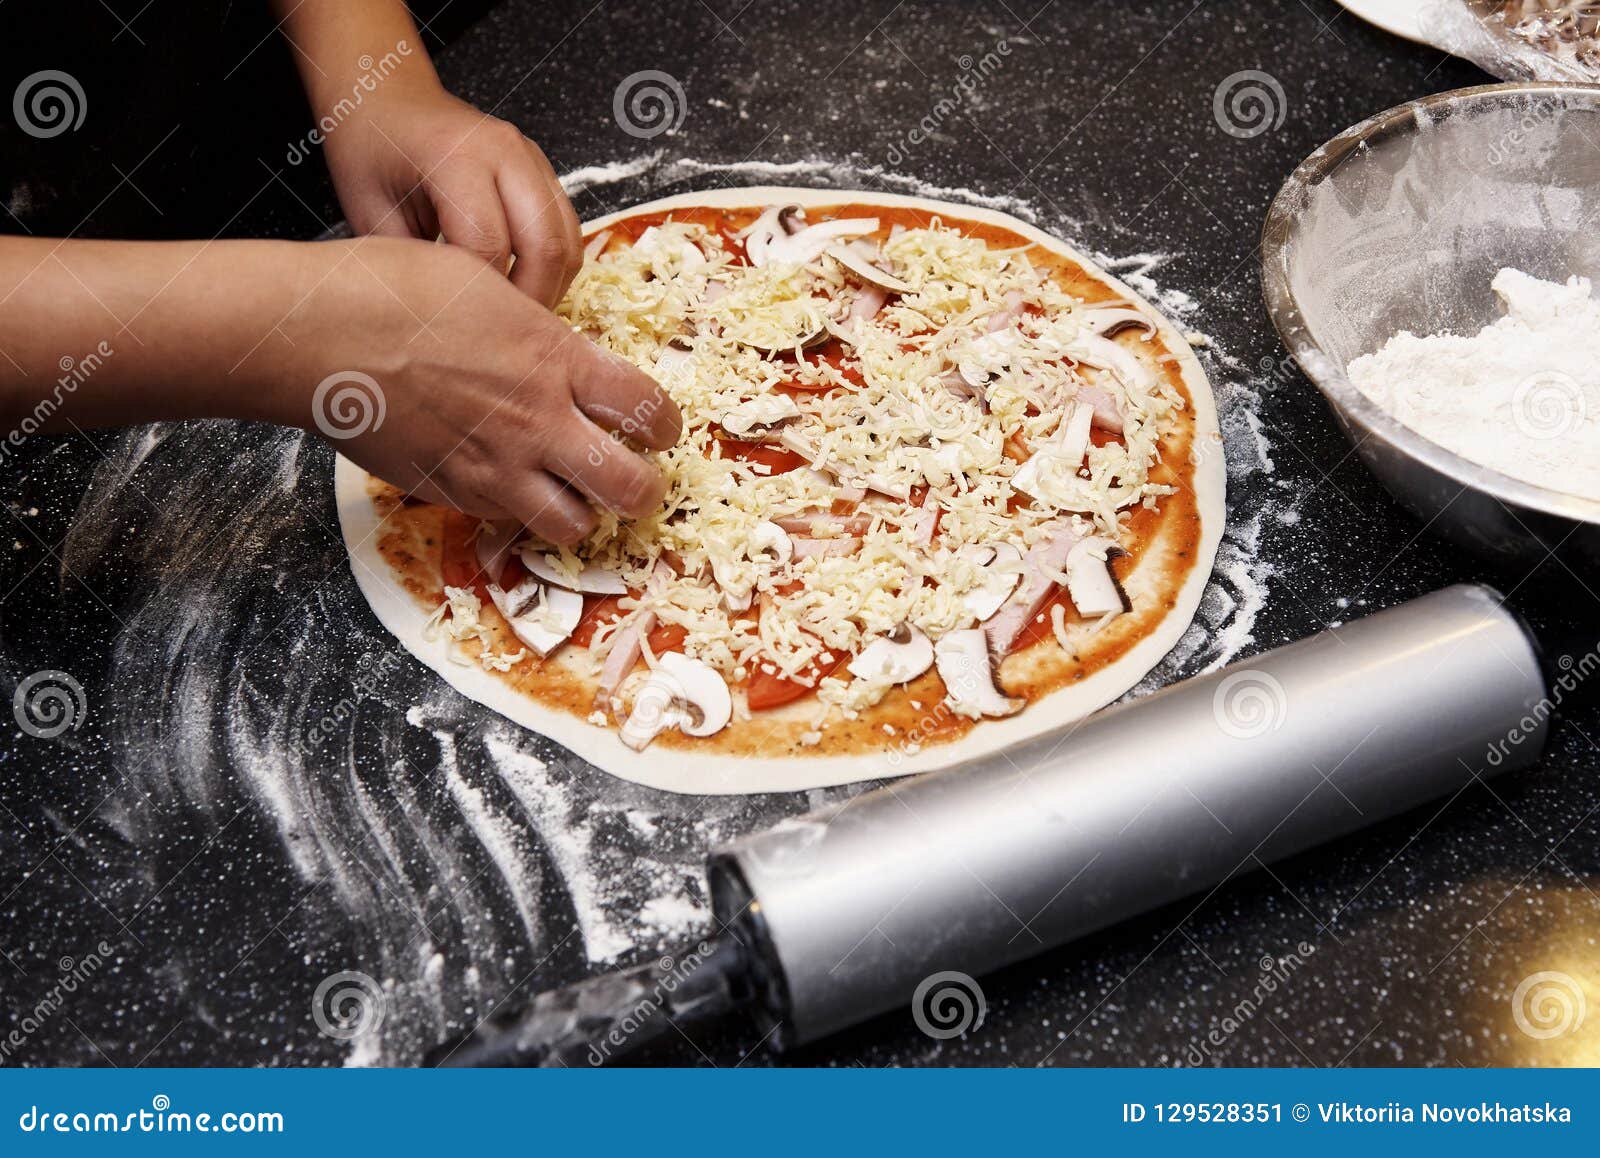 что будет если съесть сырое тесто в пицце фото 90